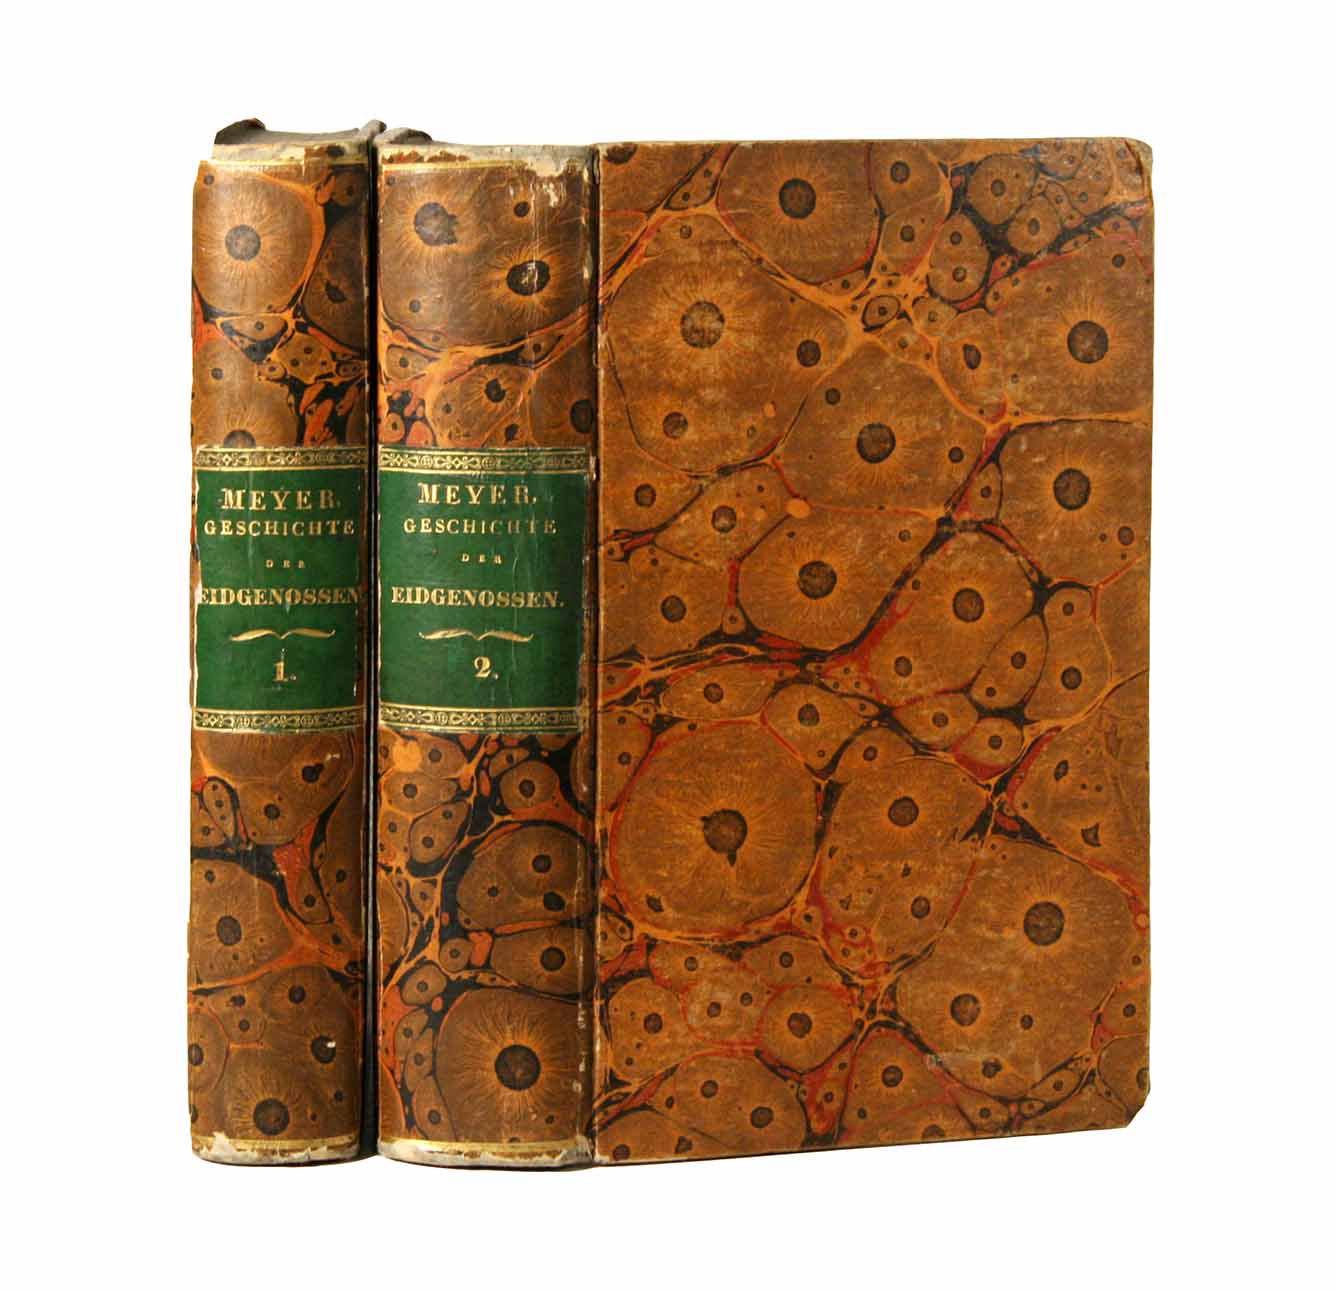 MEYER von KNONAU, Ludwig (1769-1841): - Handbuch der Geschichte der Schweizerischen Eidgenossenschaft. Zweite unvernderte Ausgabe. 2 Bde.